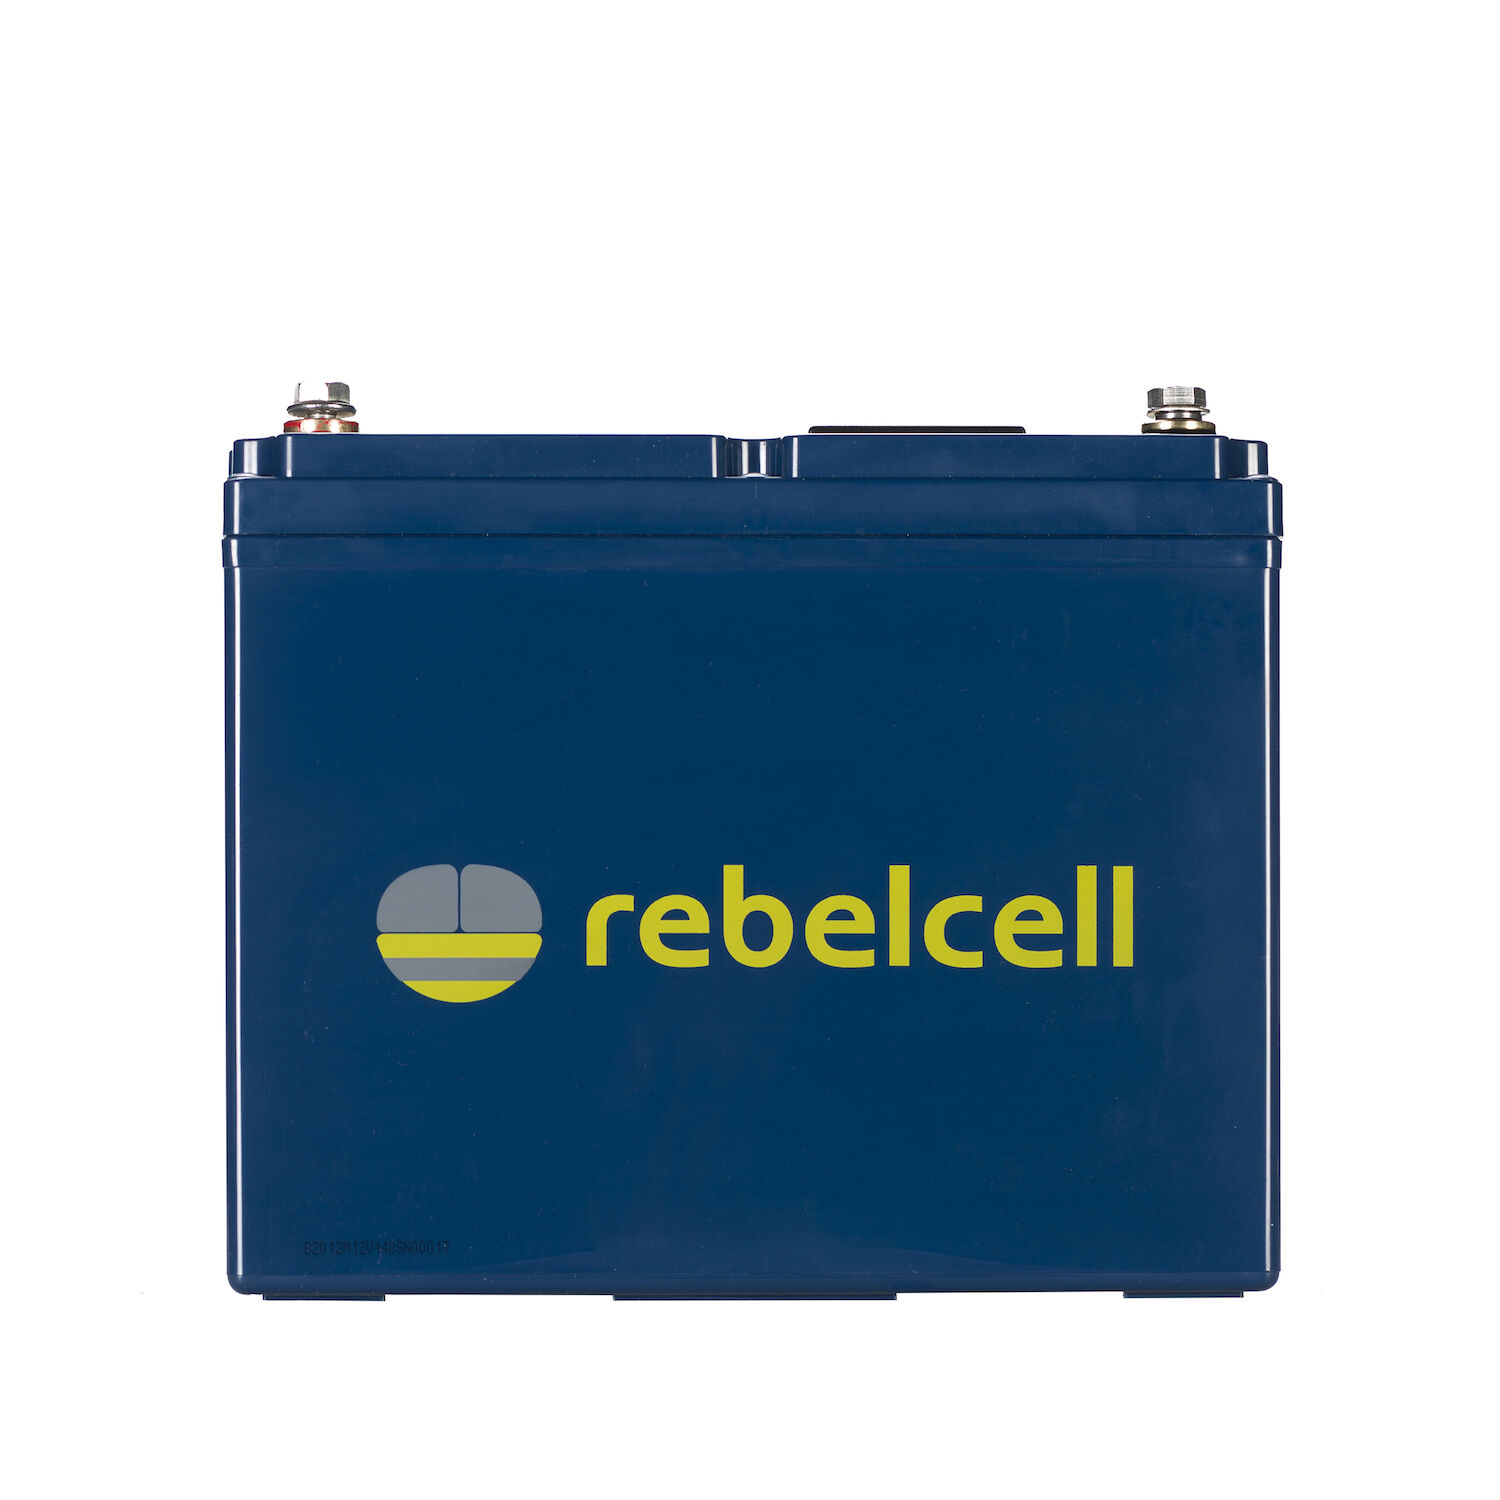 RebelCell 12V140 AV Lithium Batterie (12V 140Ah) 1,67kWh